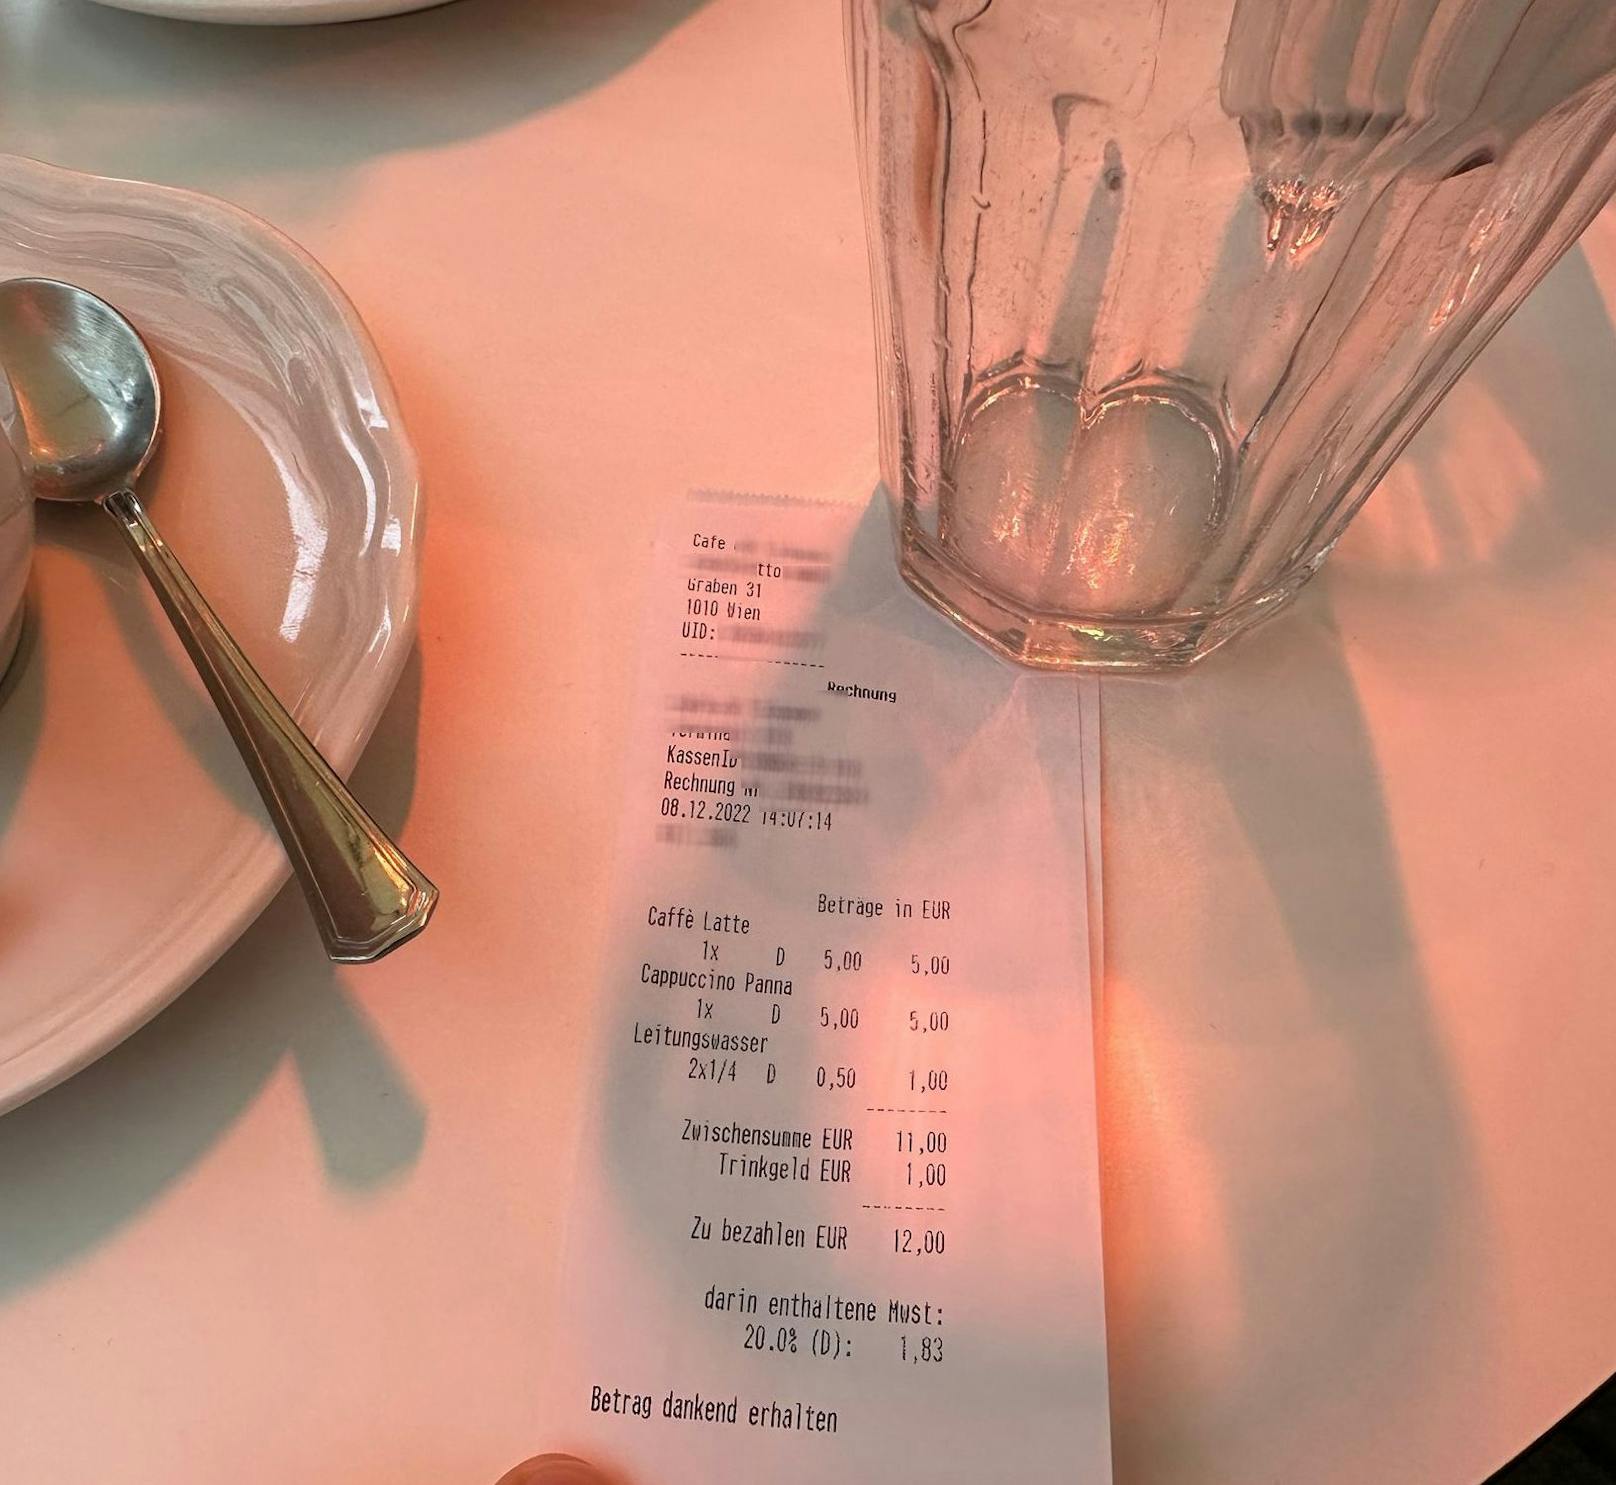 Bei der Rechnung dann der Schock: Einen Euro musste der Herr für das eigentlich obligatorische Glas Wasser zahlen.